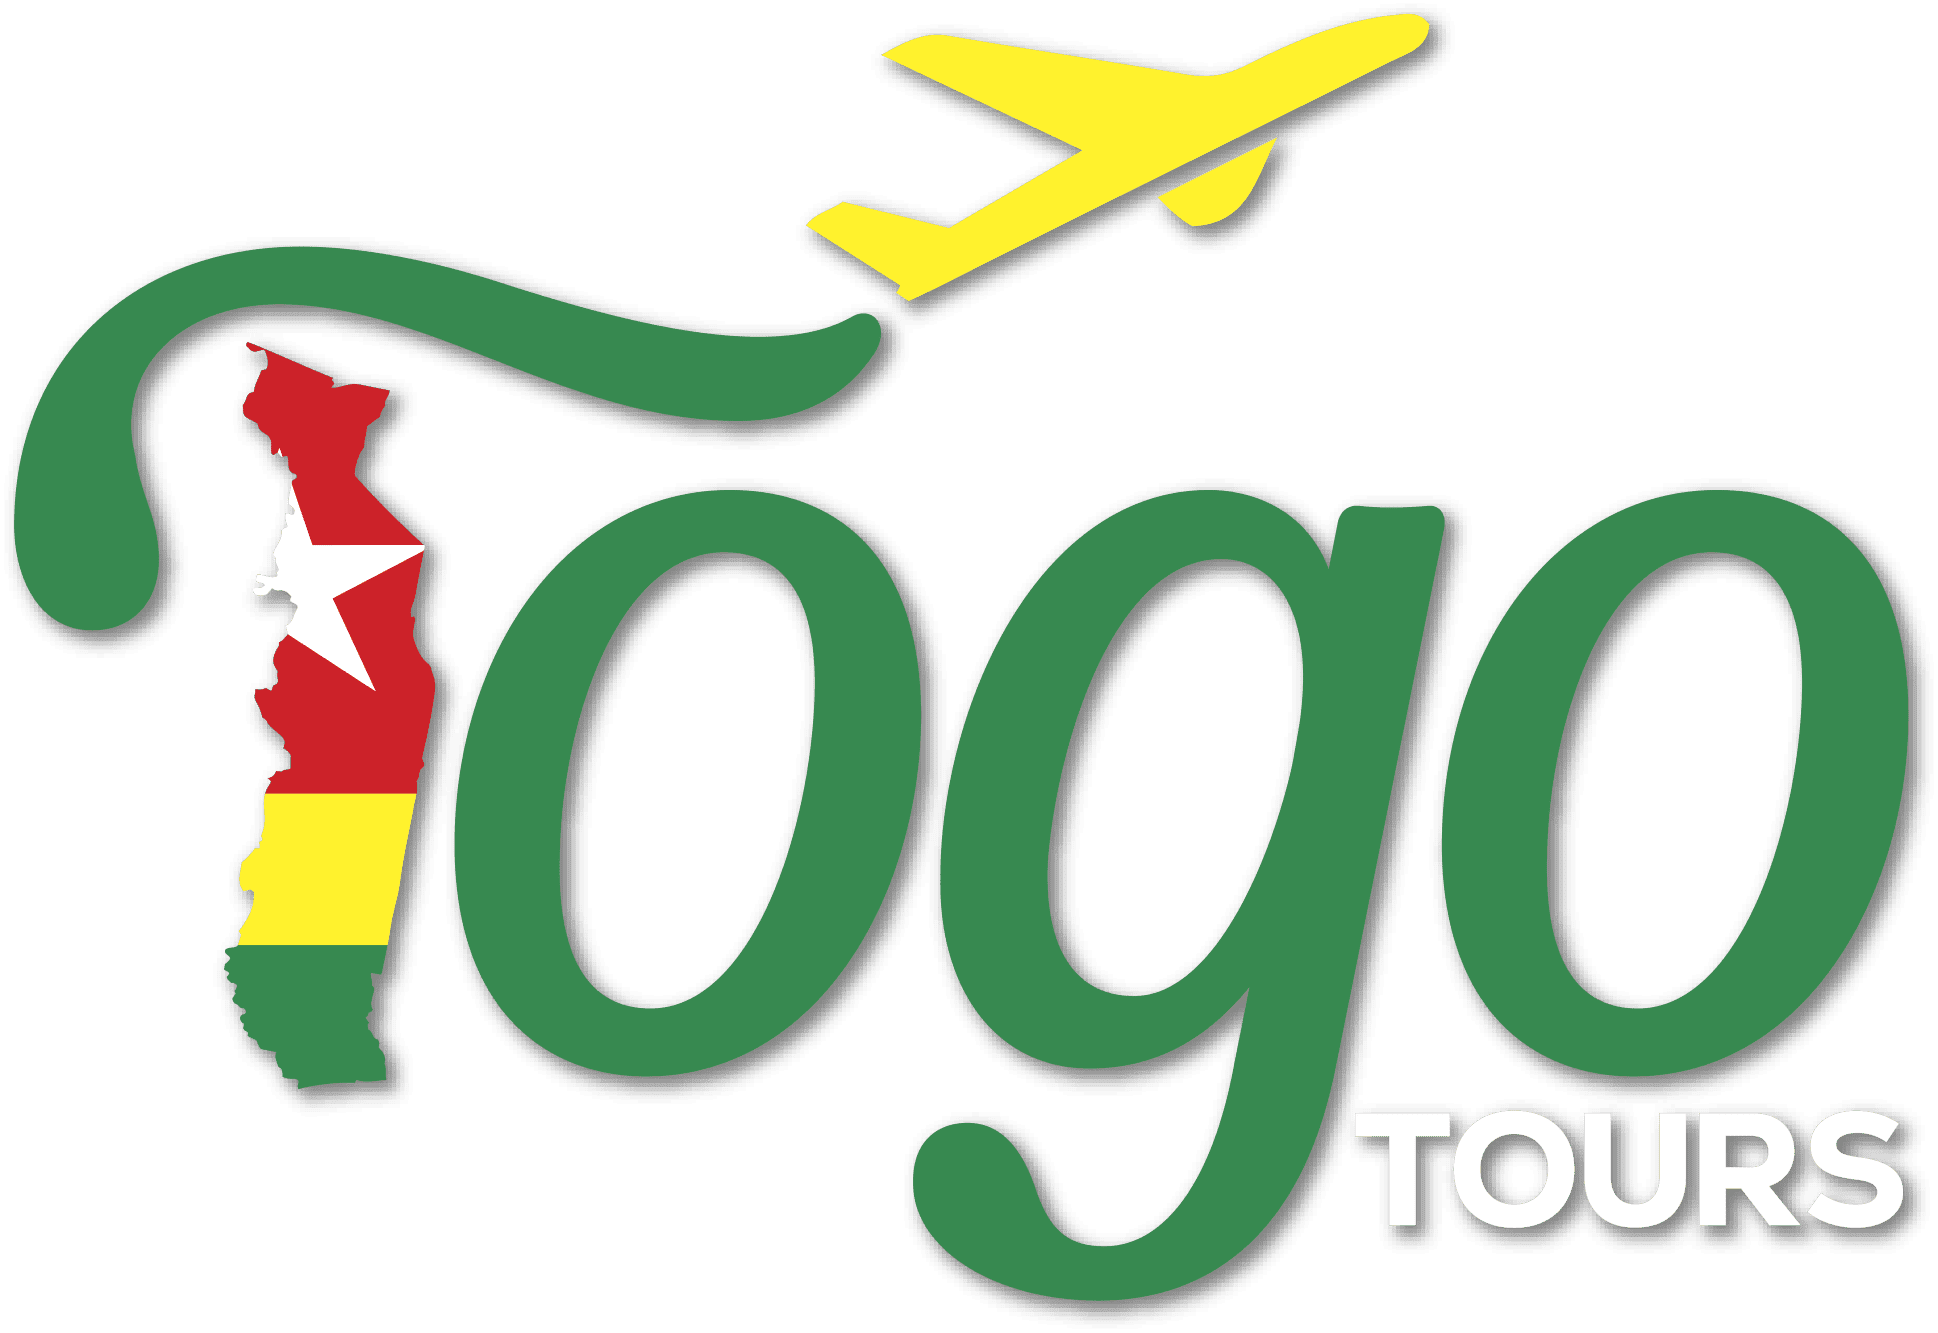 Togo tours 01